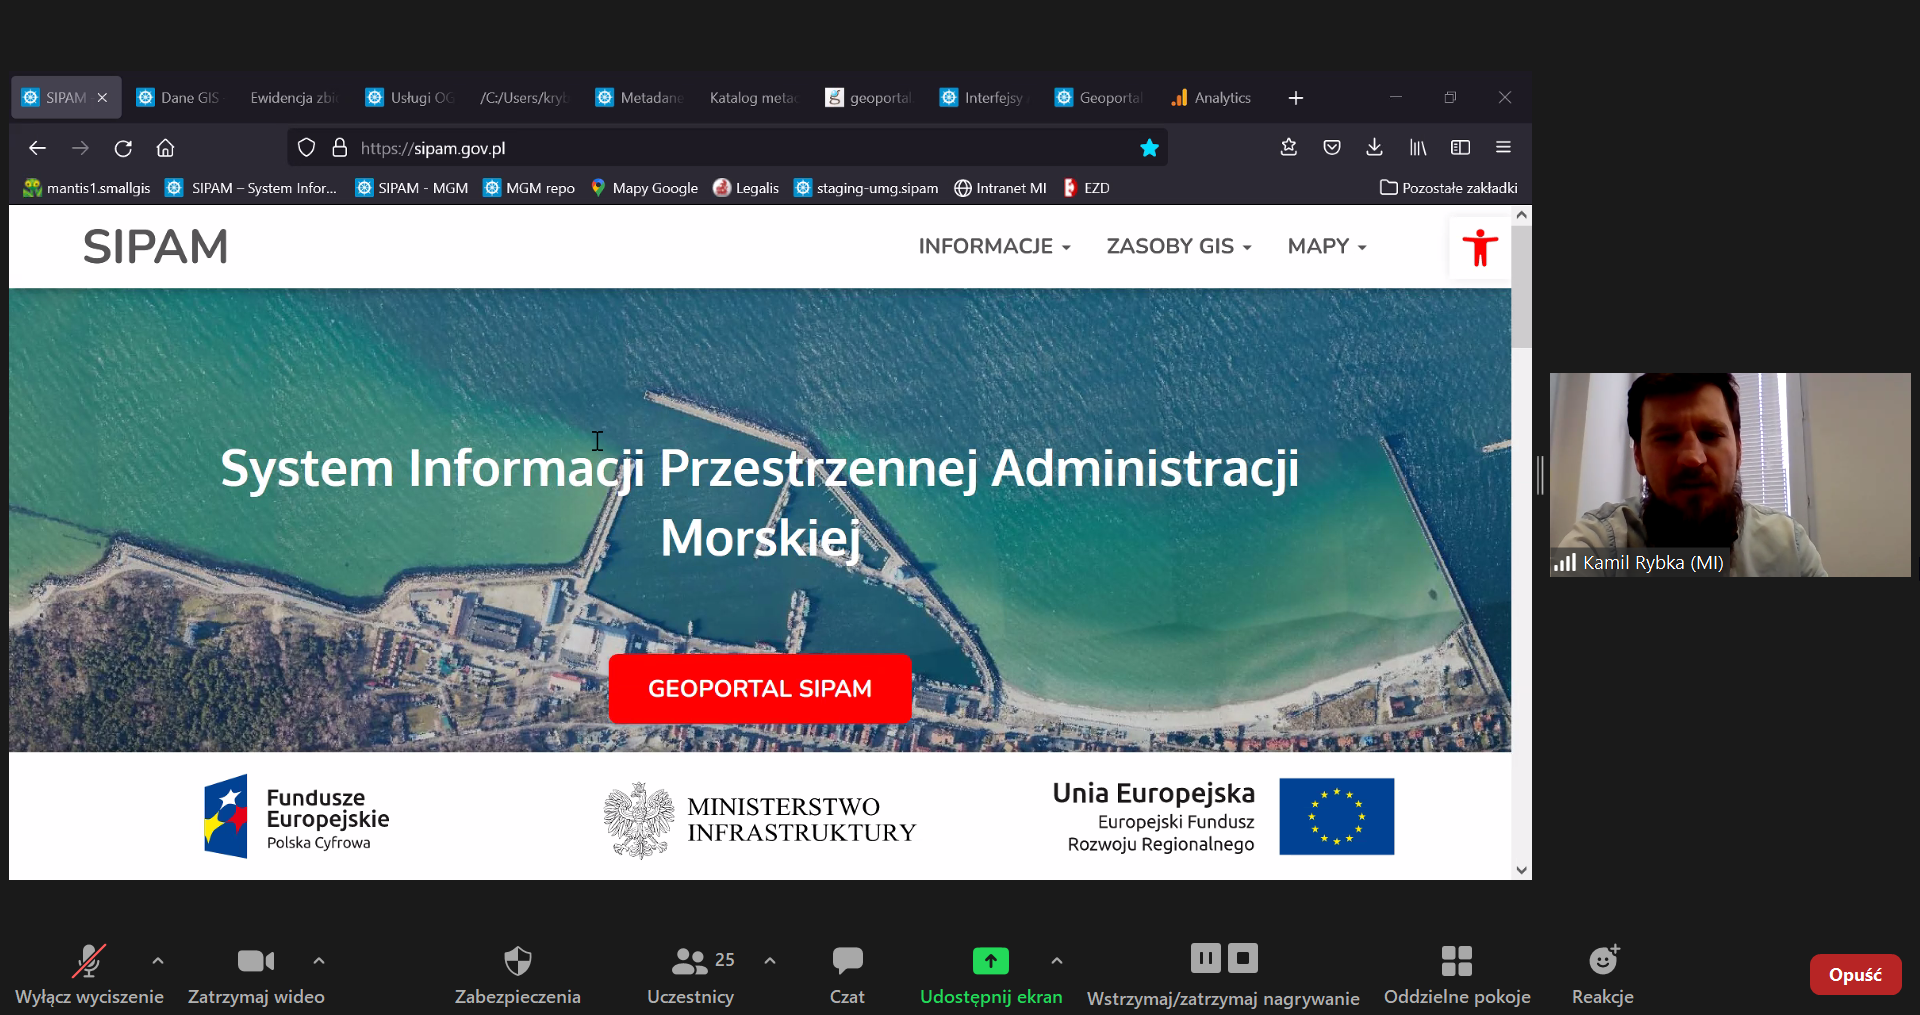 Zrzut ekranu z aplikacji ZOOM (programu do prowadzenia telekonferencji). Po lewej stronie fragment prezentacji. Po prawej stronie zdjęcie Kamila Rybki z Departamentu Gospodarki Morskiej, Ministerstwa Infrastruktury.